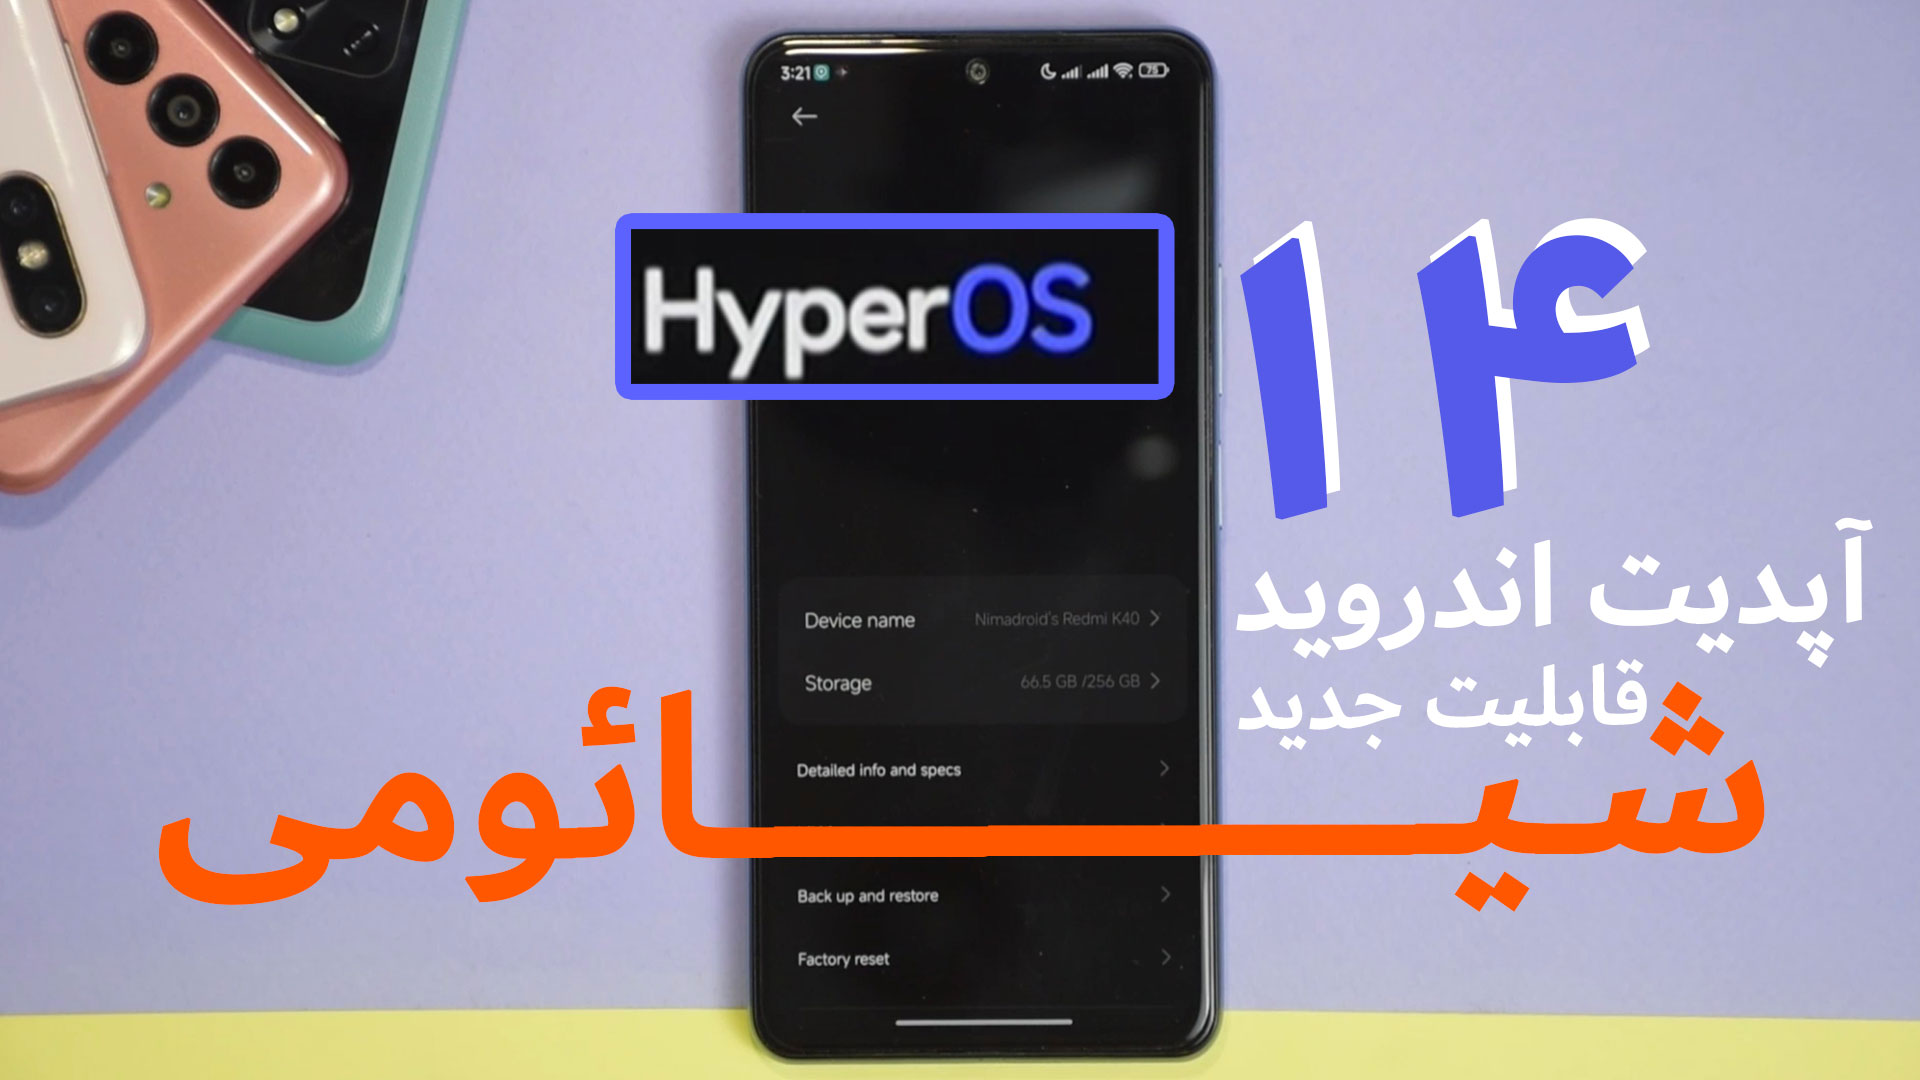 ویدئو بررسی آپدیت HyperOS : با ۱۴ قابلیت جدید آپدیت اندروید ۱۴ شیائومی آشنا شوید